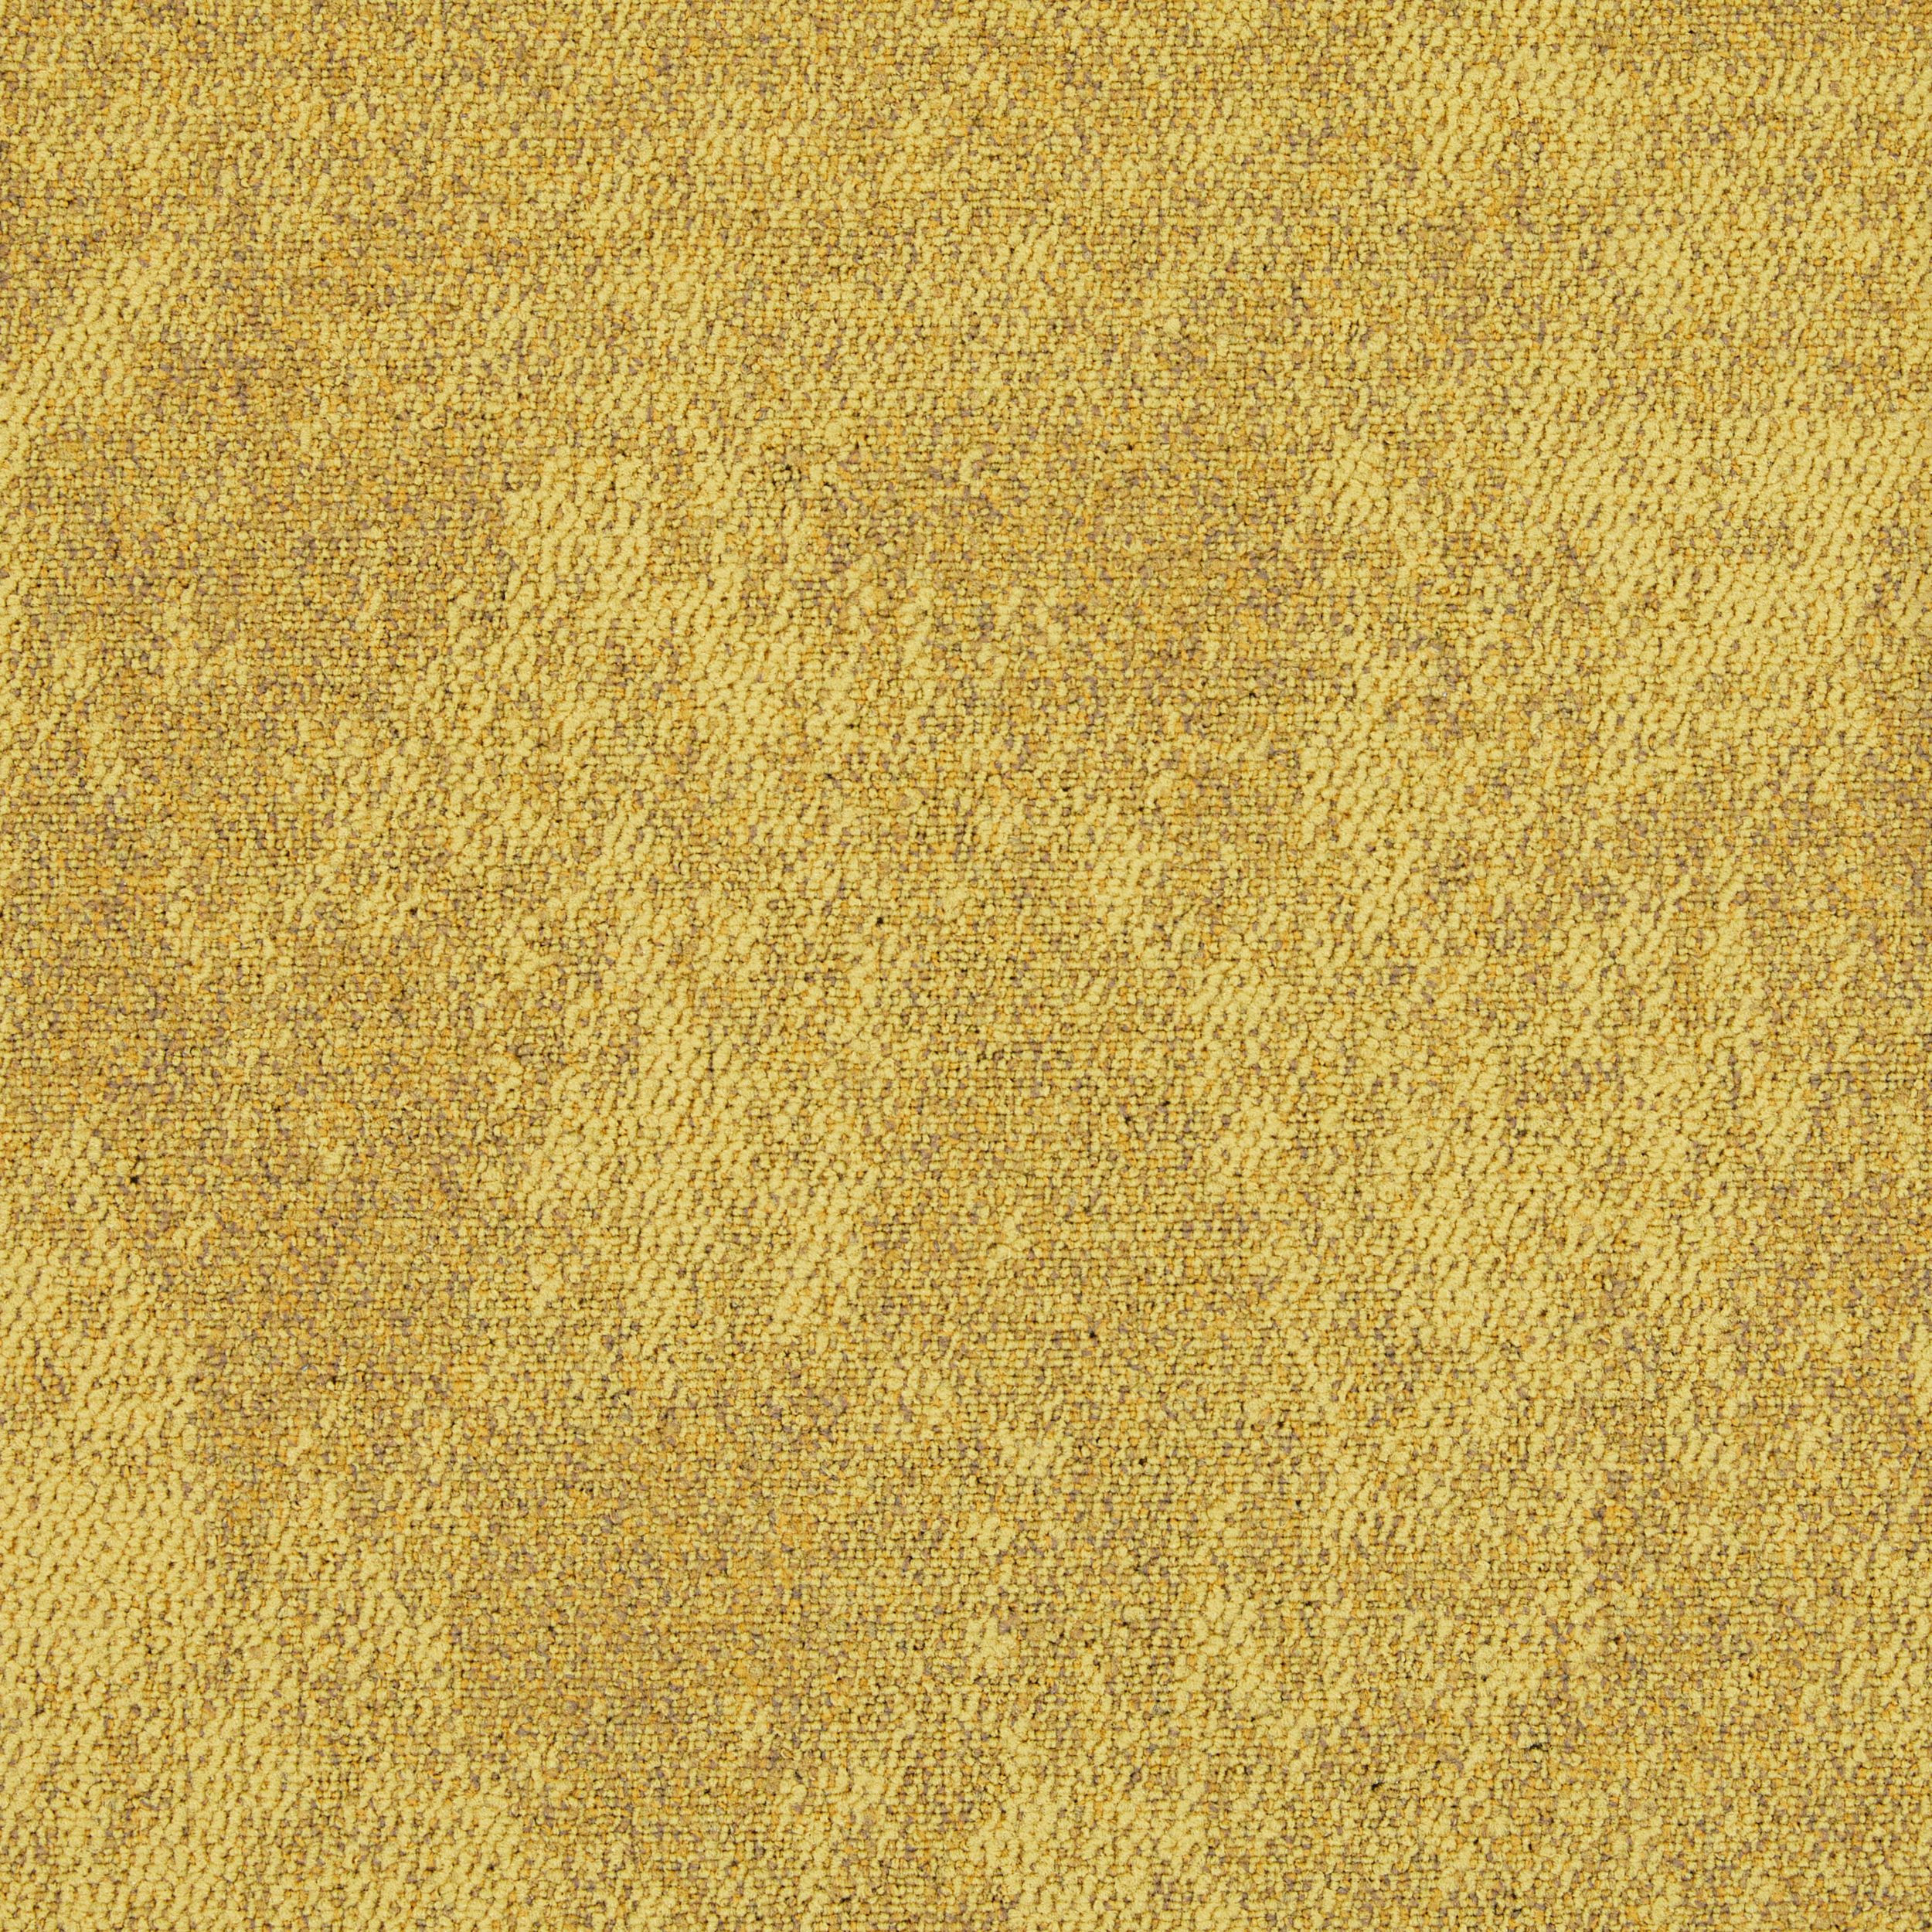 CE100 carpet tile in Shade Bildnummer 2